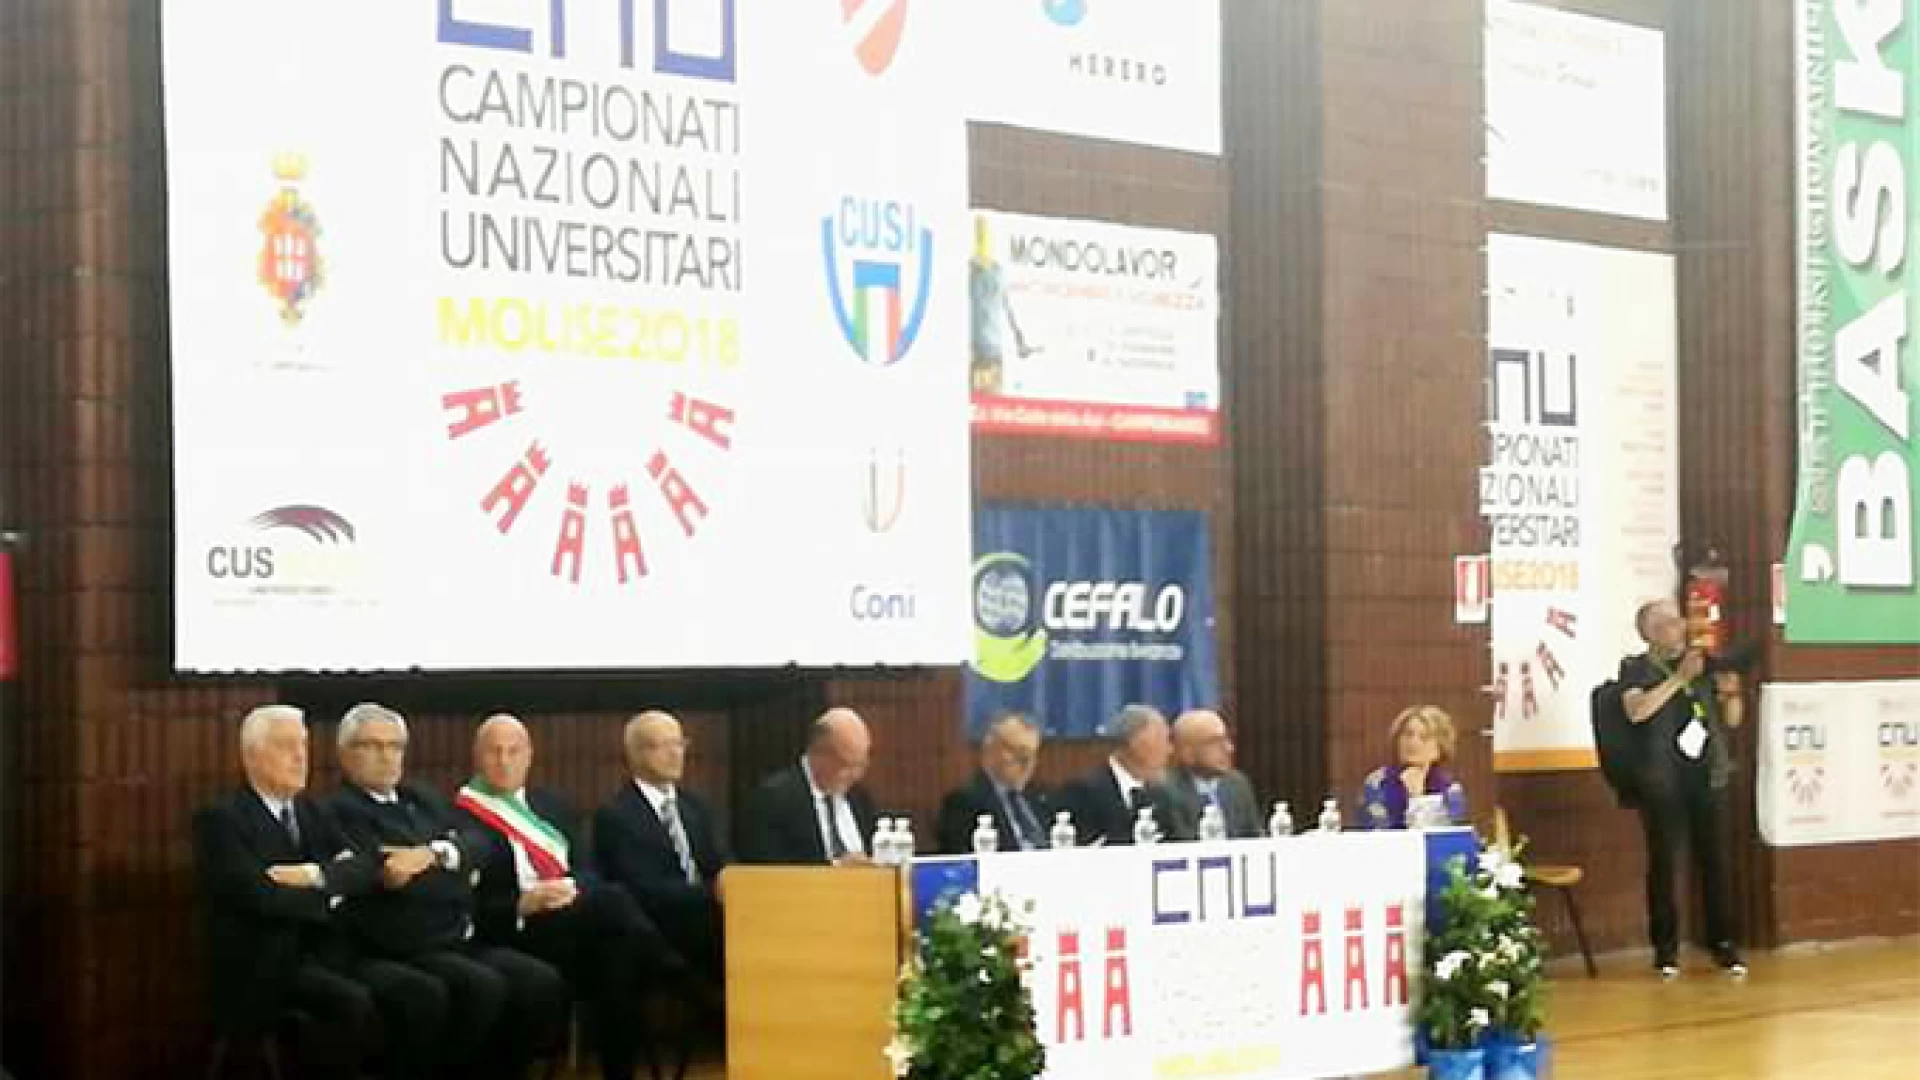 Campionati nazionali Universitari, Filignano c’è !!! Il messaggio del presidente della Provincia di Isernia Lorenzo Coia in occasione della cerimonia di aperura dei giochi.